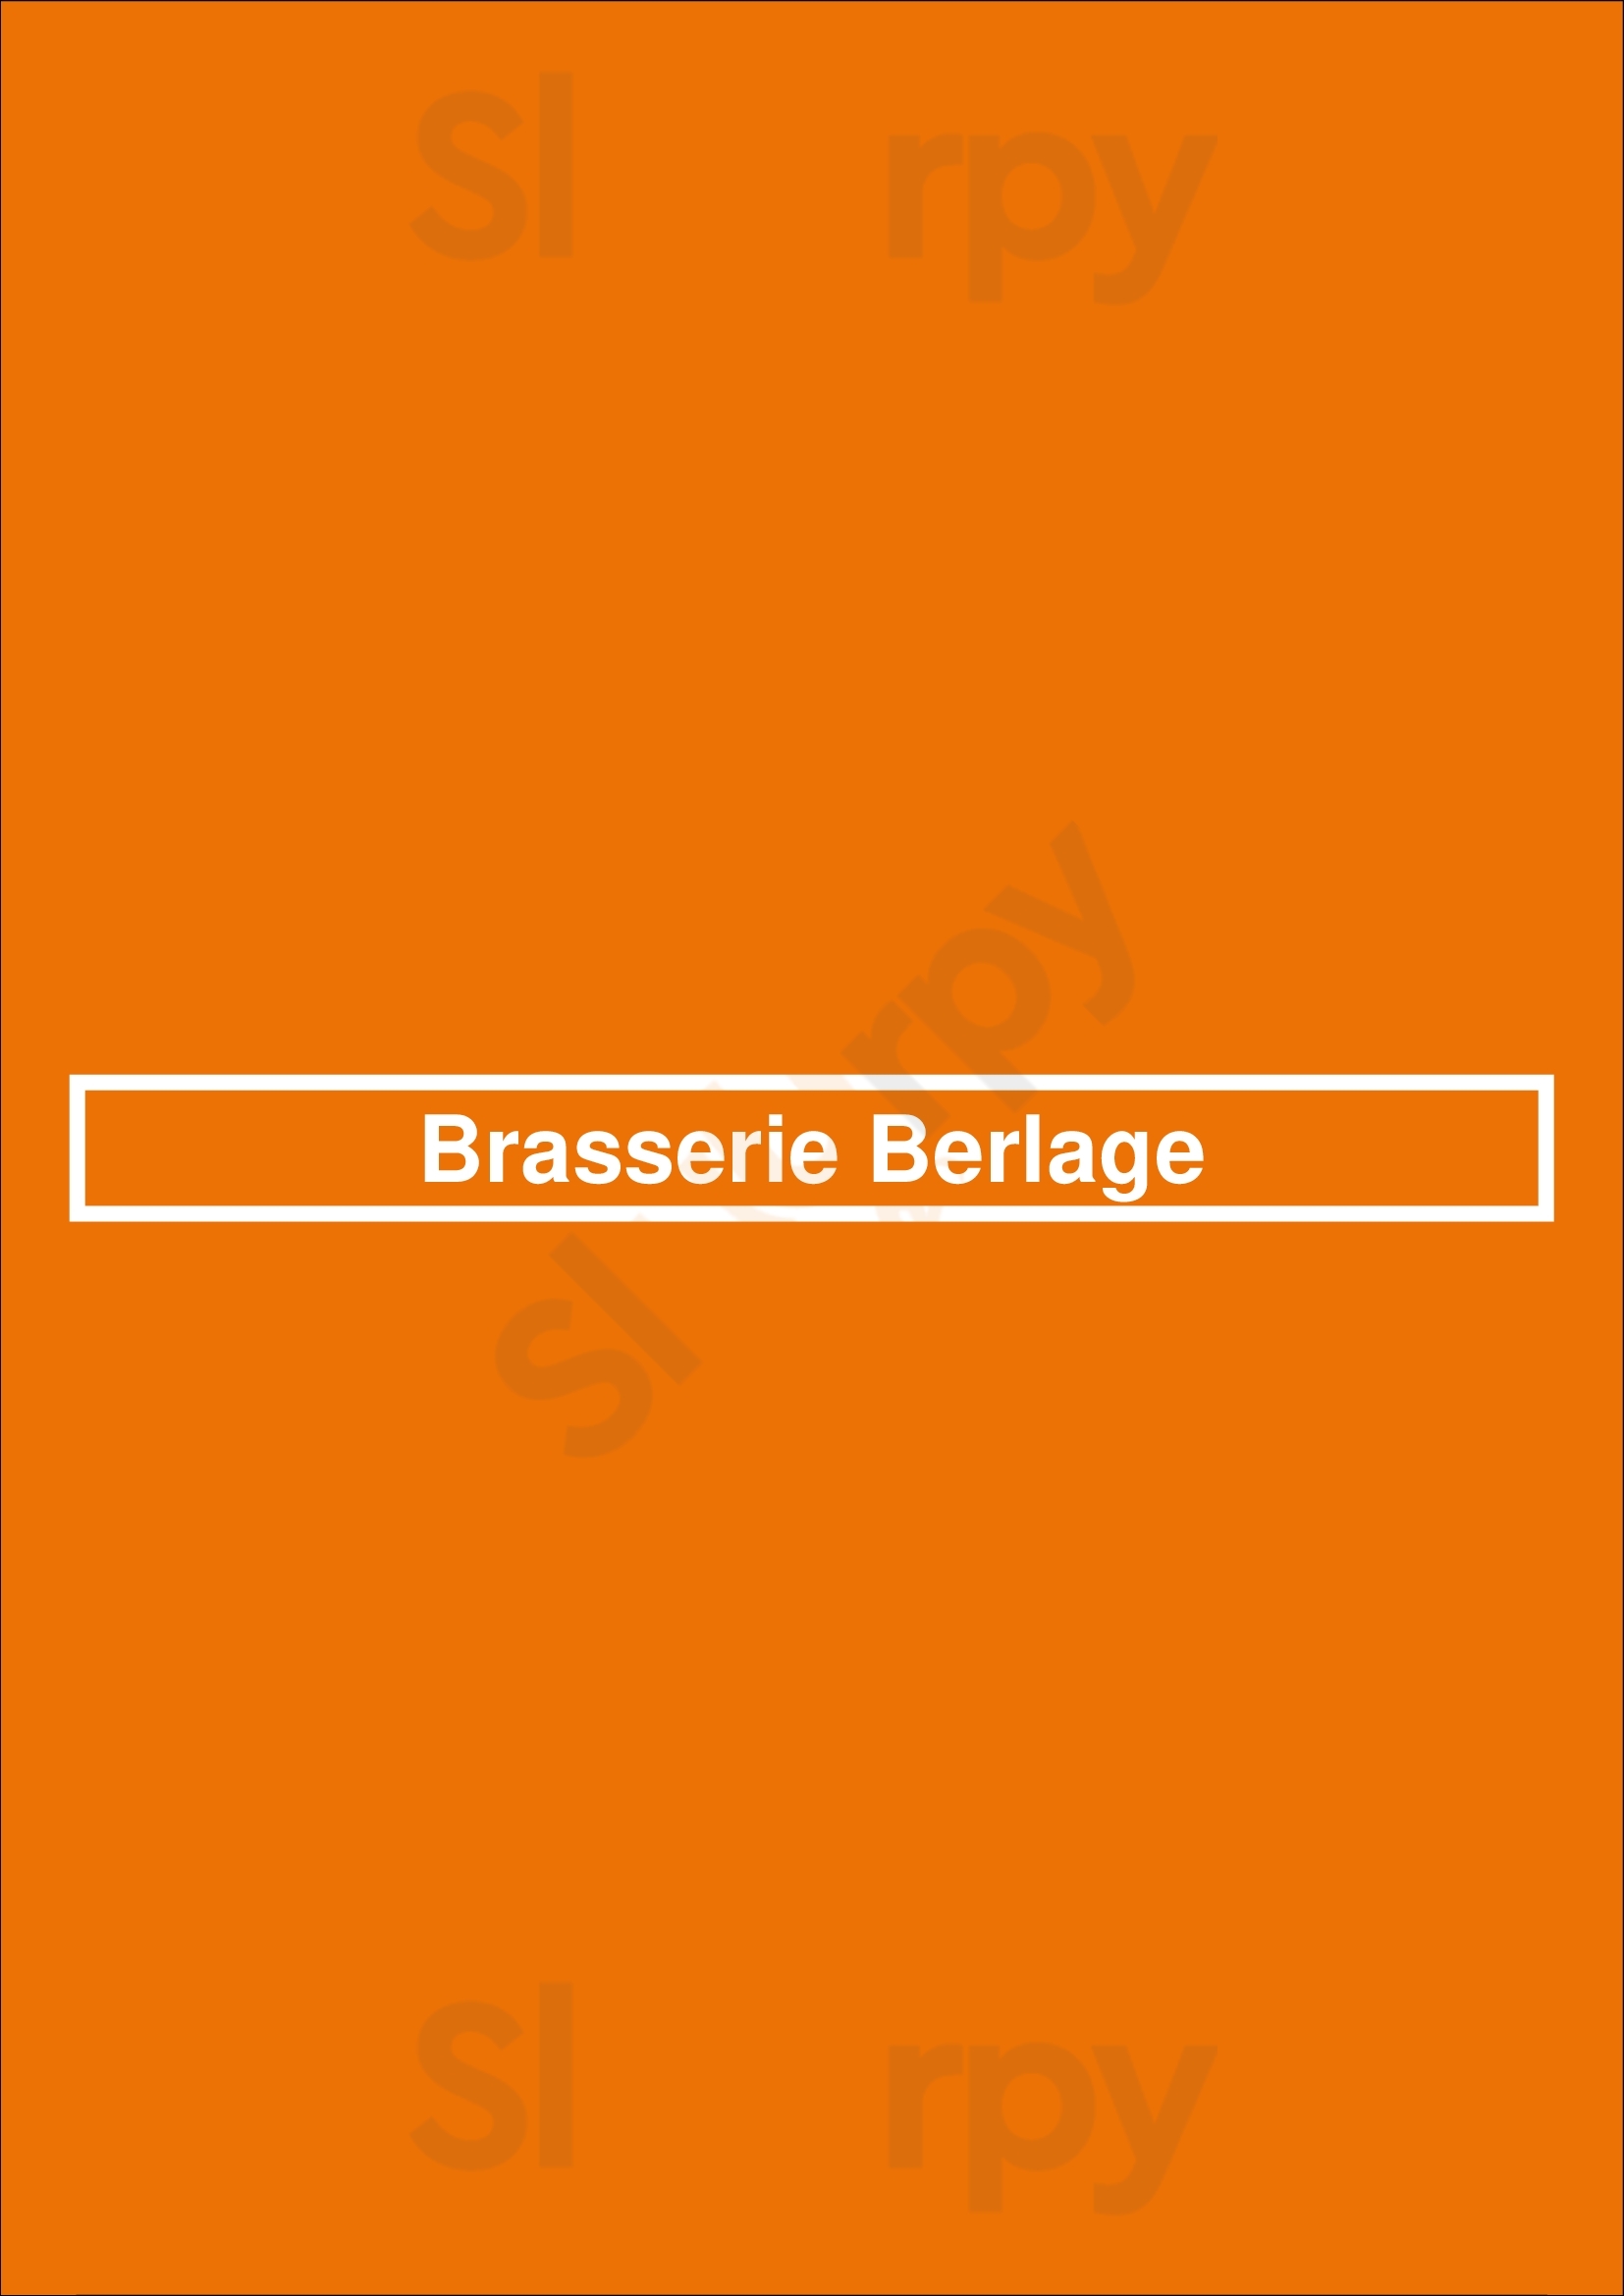 Brasserie Berlage Den Haag Menu - 1